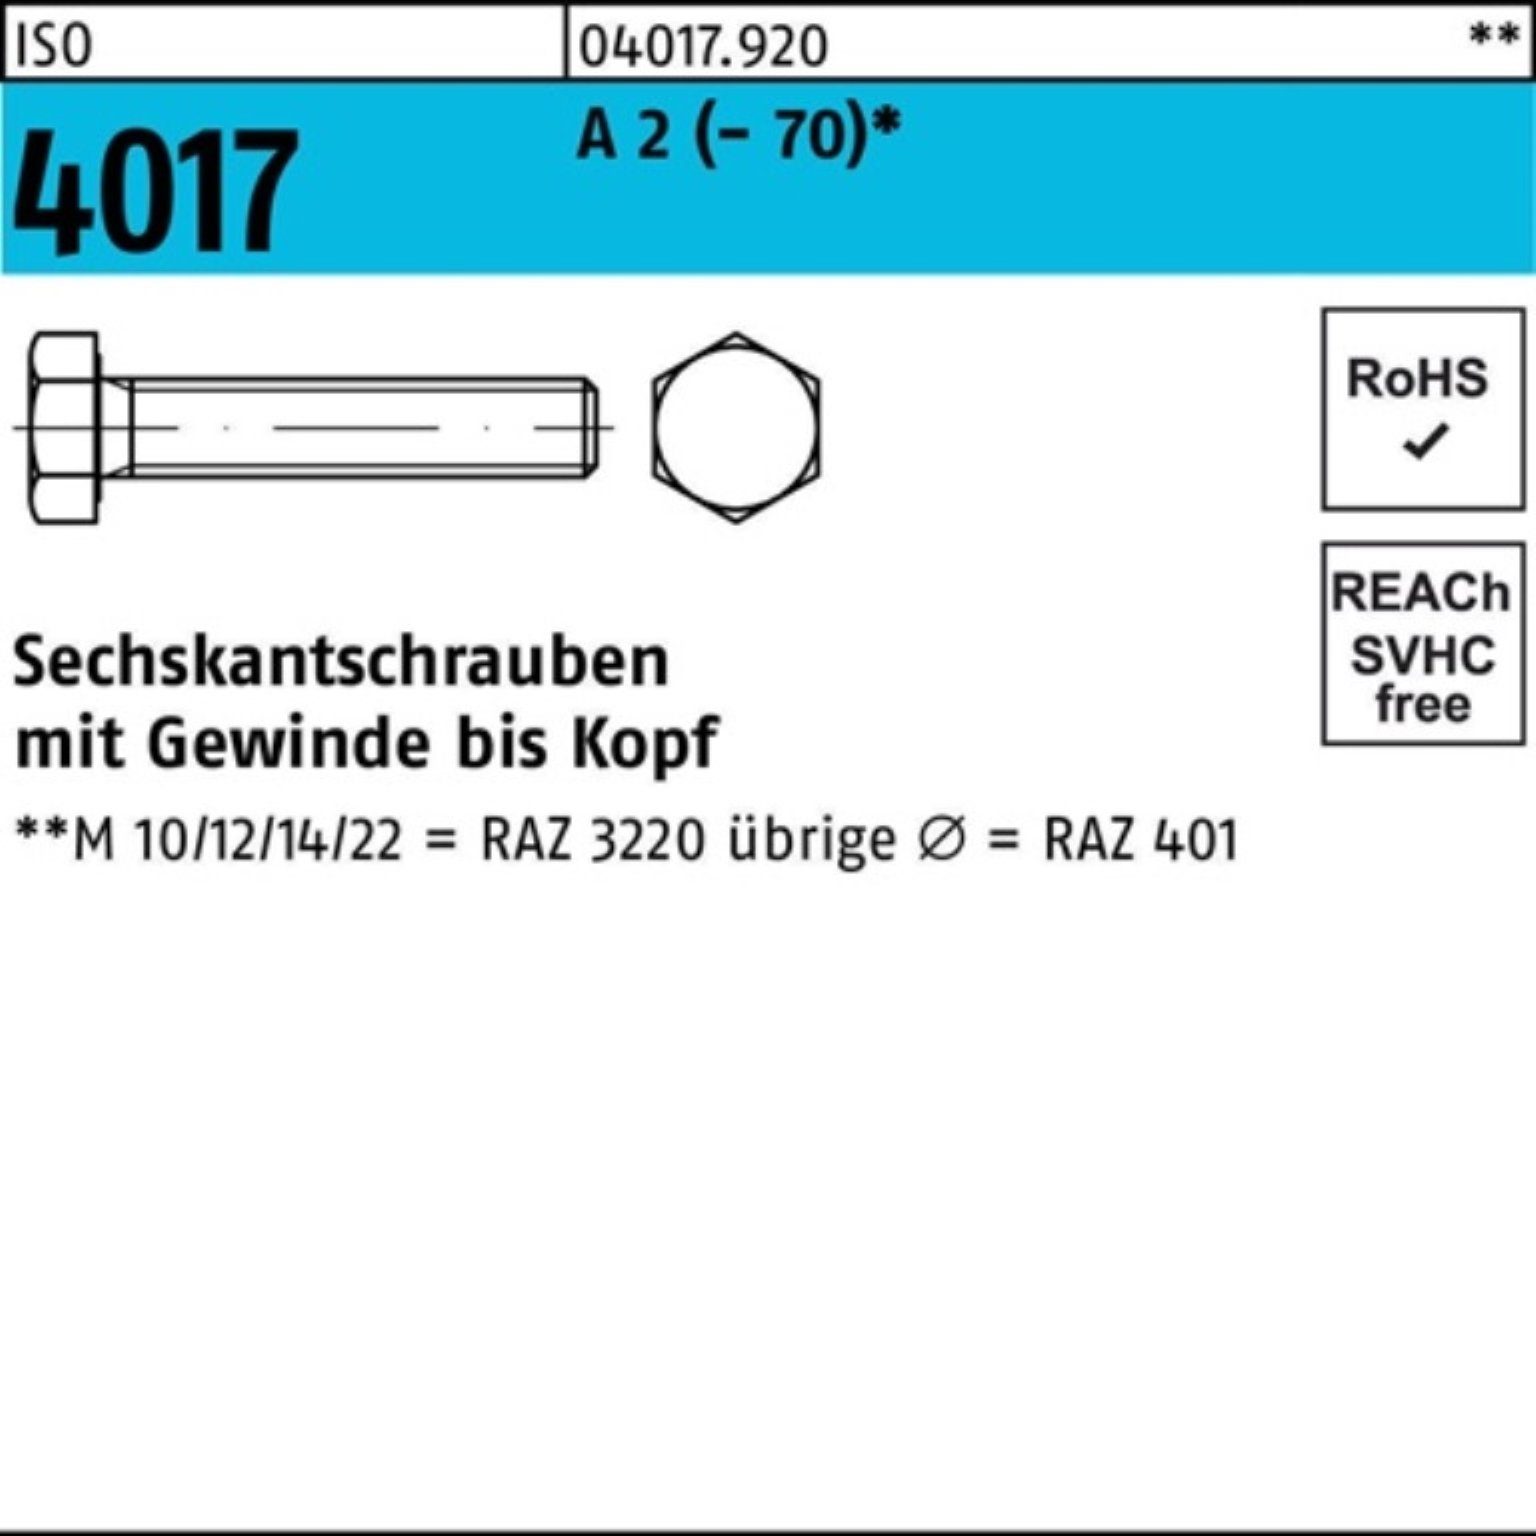 Bufab Sechskantschraube 100er Pack Sechskantschraube ISO 4017 VG M24x 90 A 2 (70) 1 Stück I